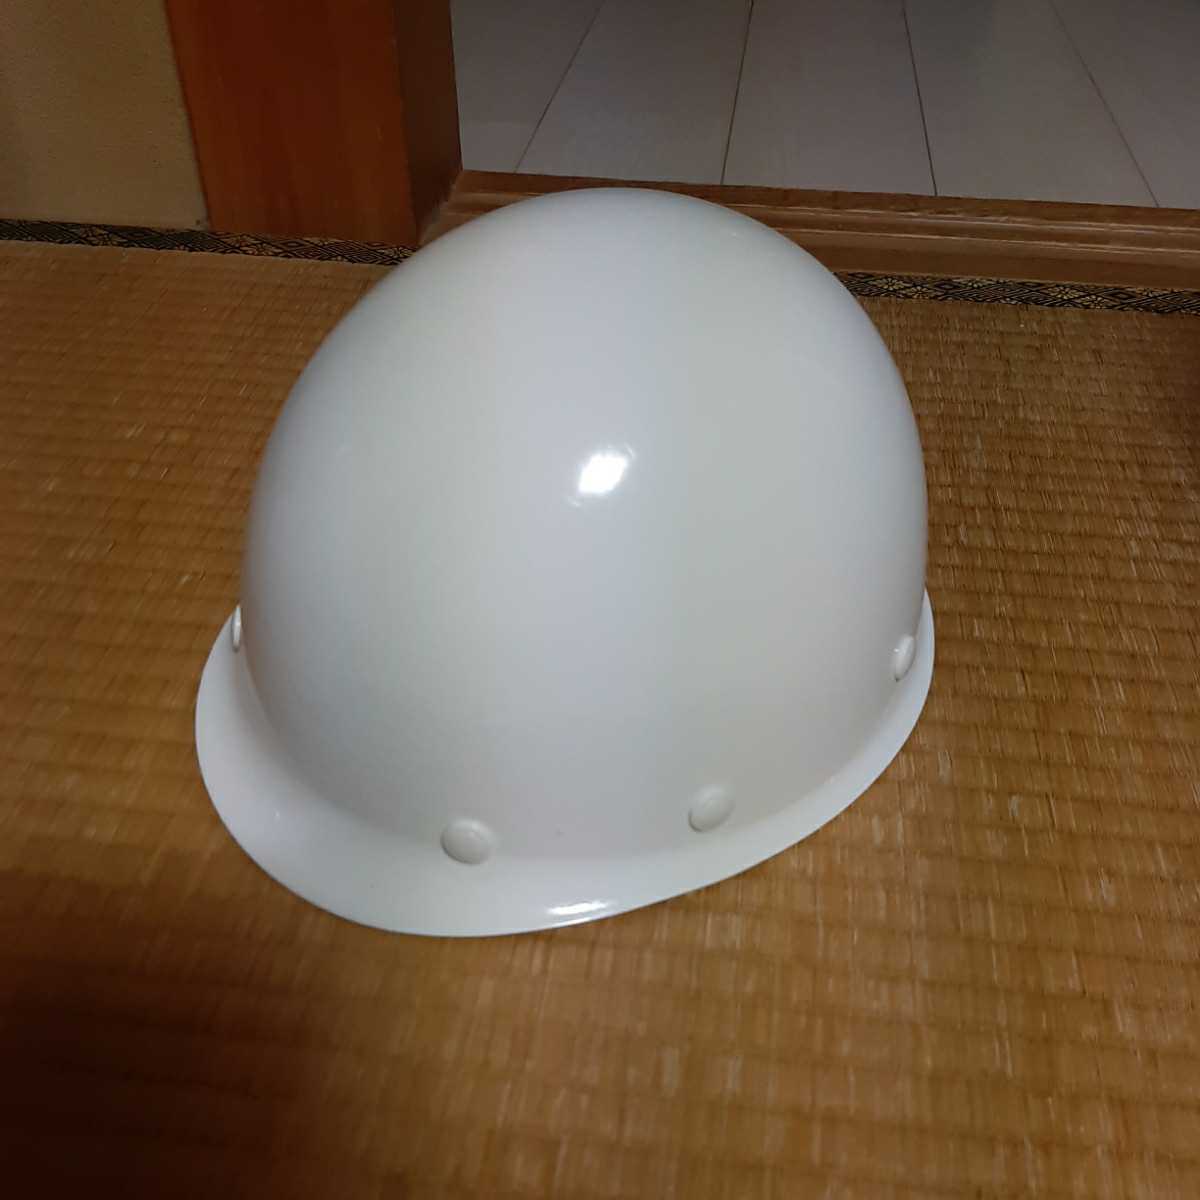  новый товар не использовался шлем зеленый электро- машина безопасность защита защита шапочка Work man работа 